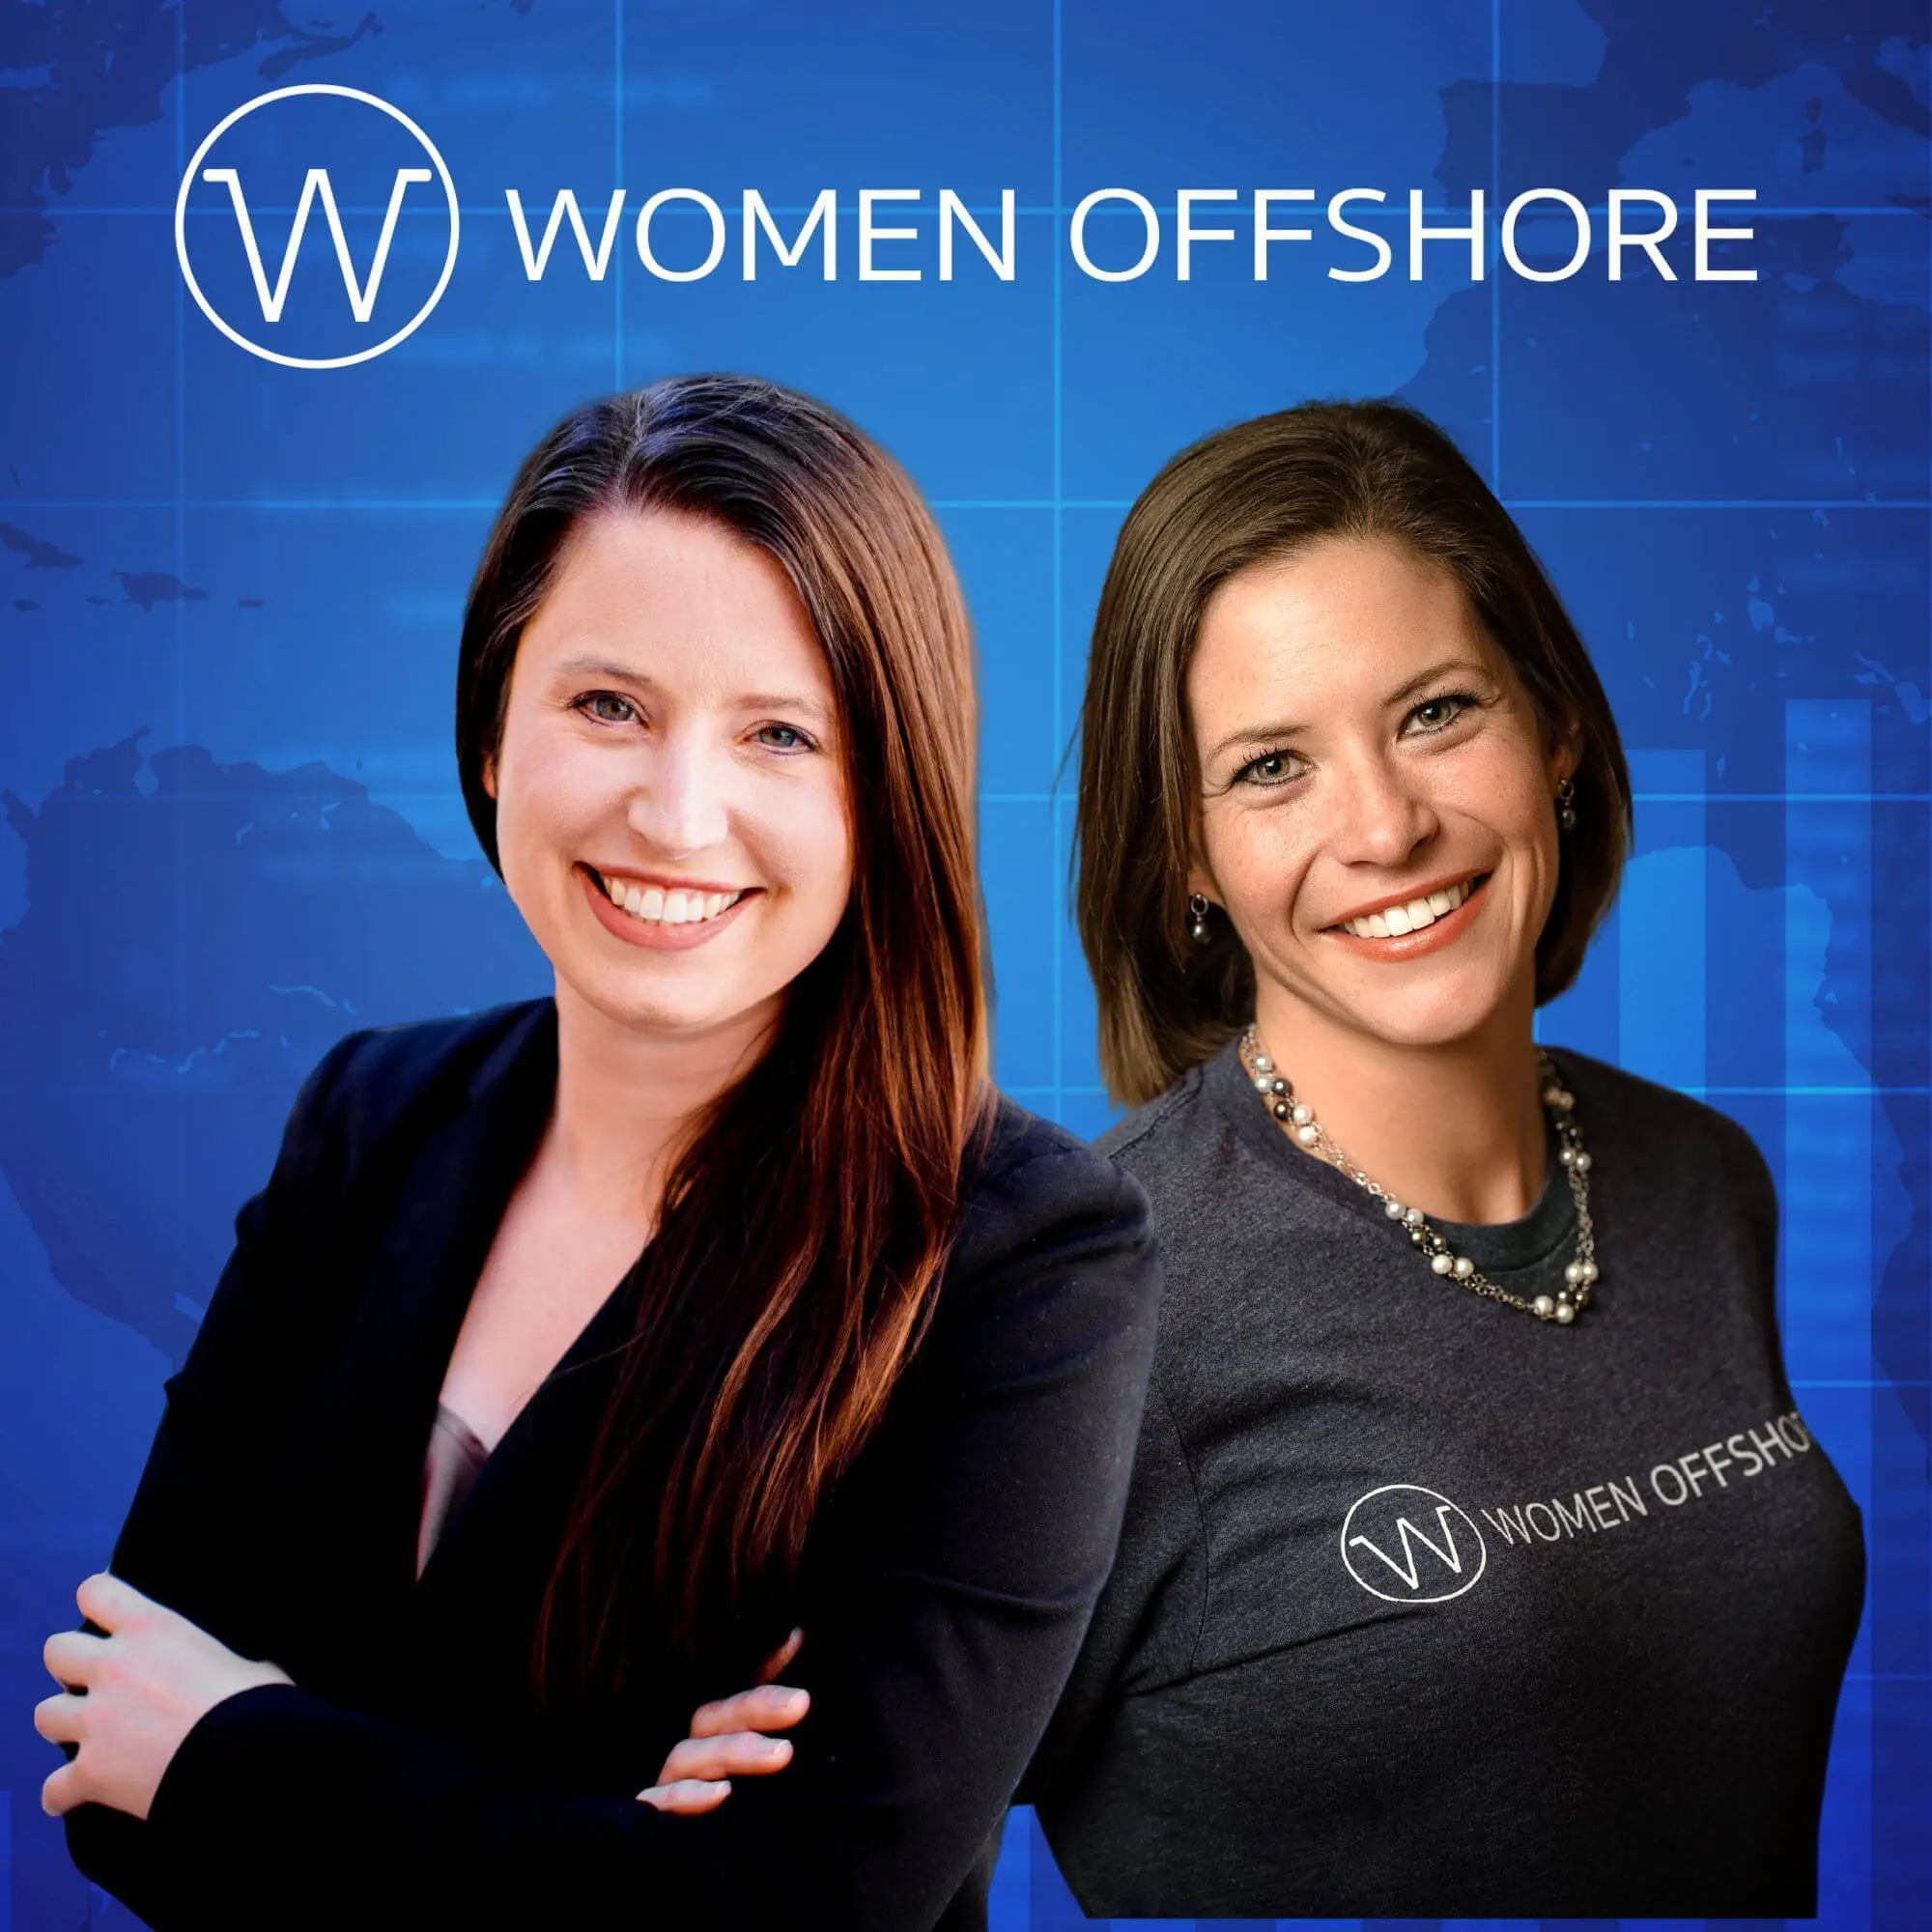 Women Offshore